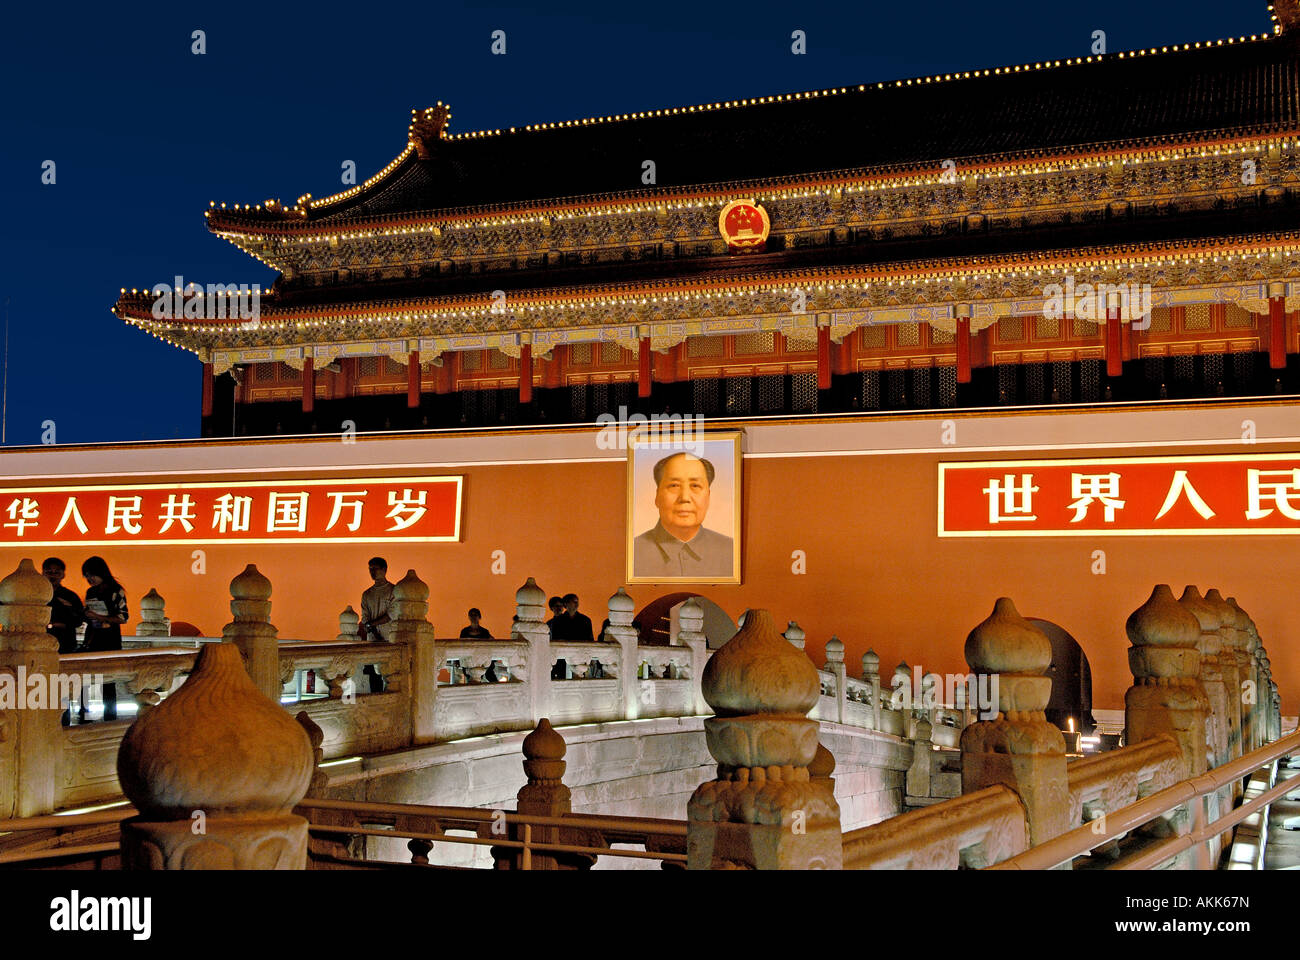 Entrée de la Cité interdite la place Tienanmen Beijing Chine Banque D'Images